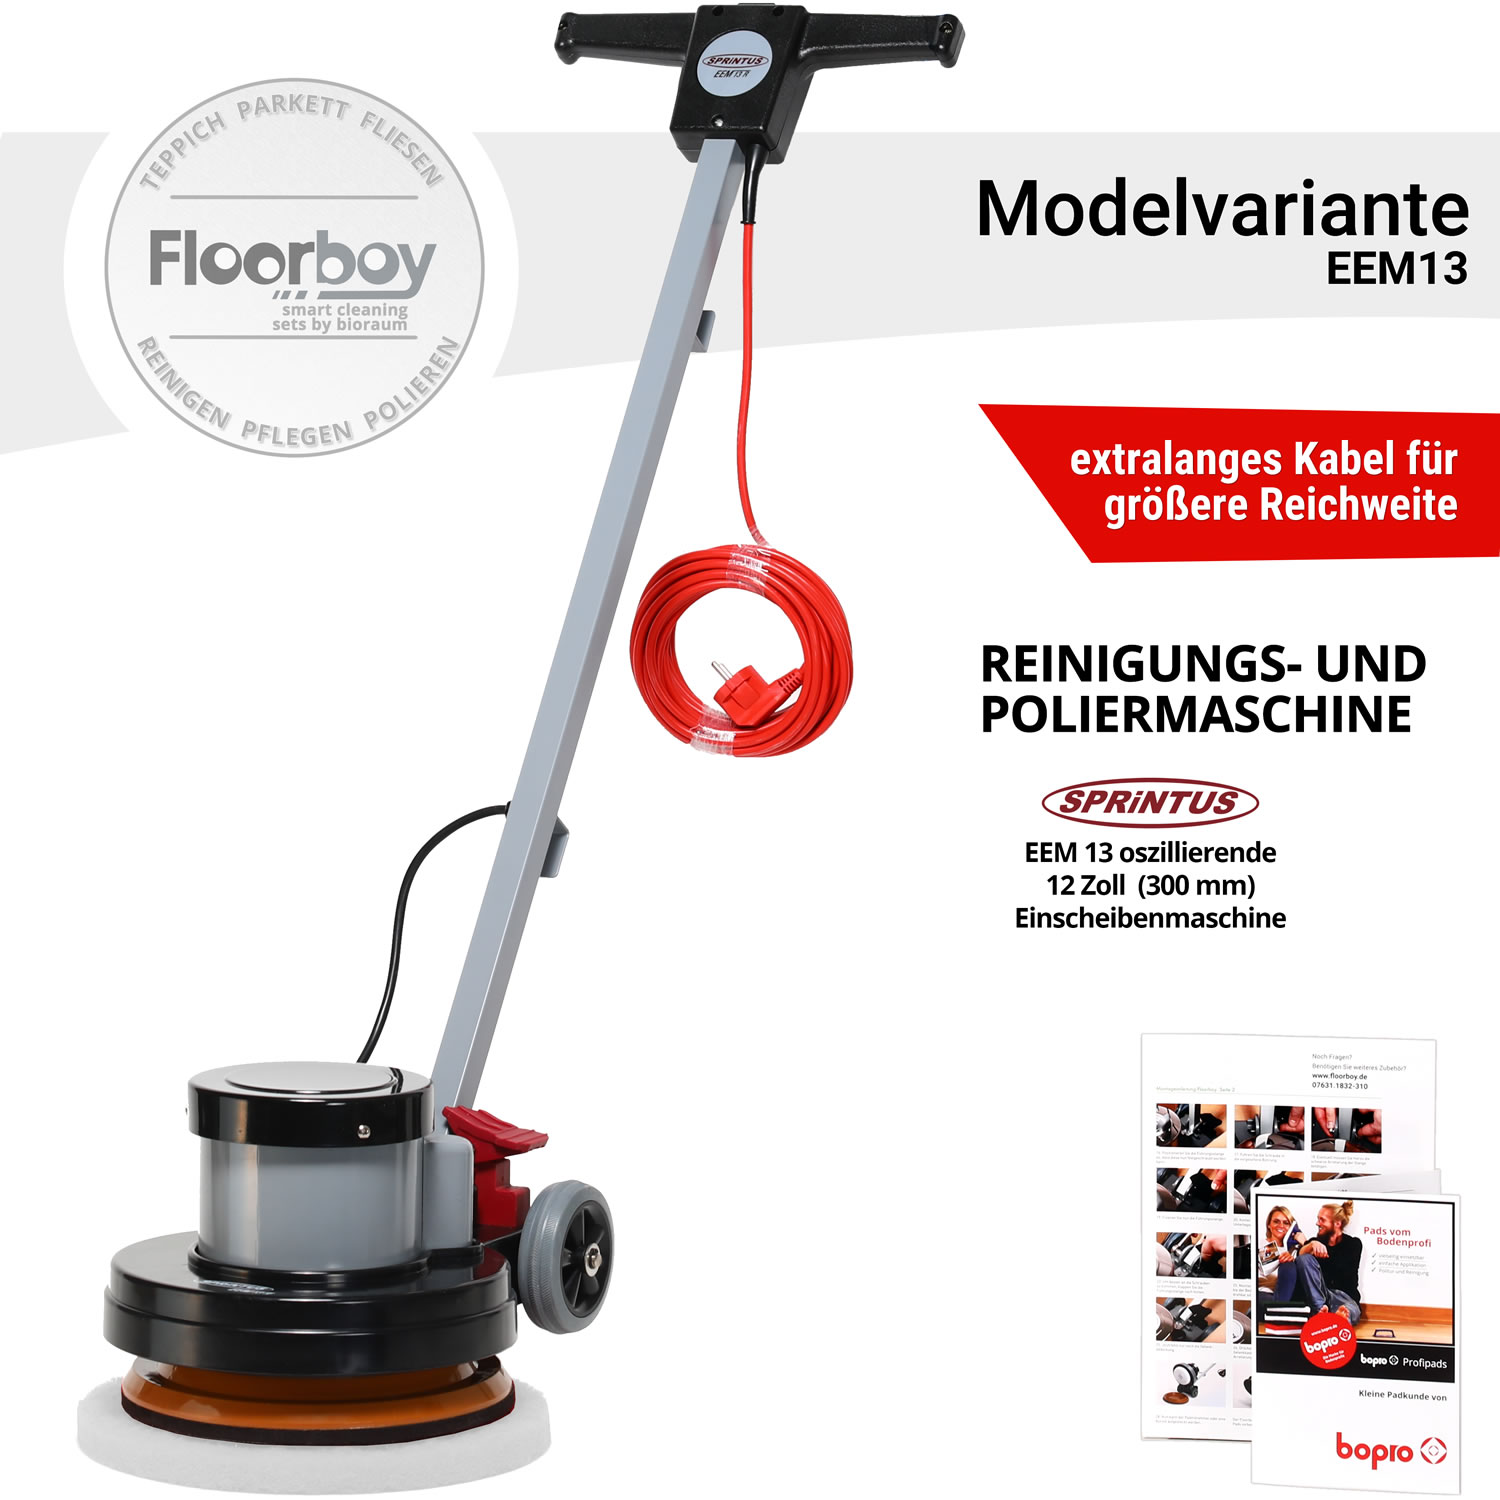 Floorboy EEM13 Poliermaschine mit Treibteller von Sprintus